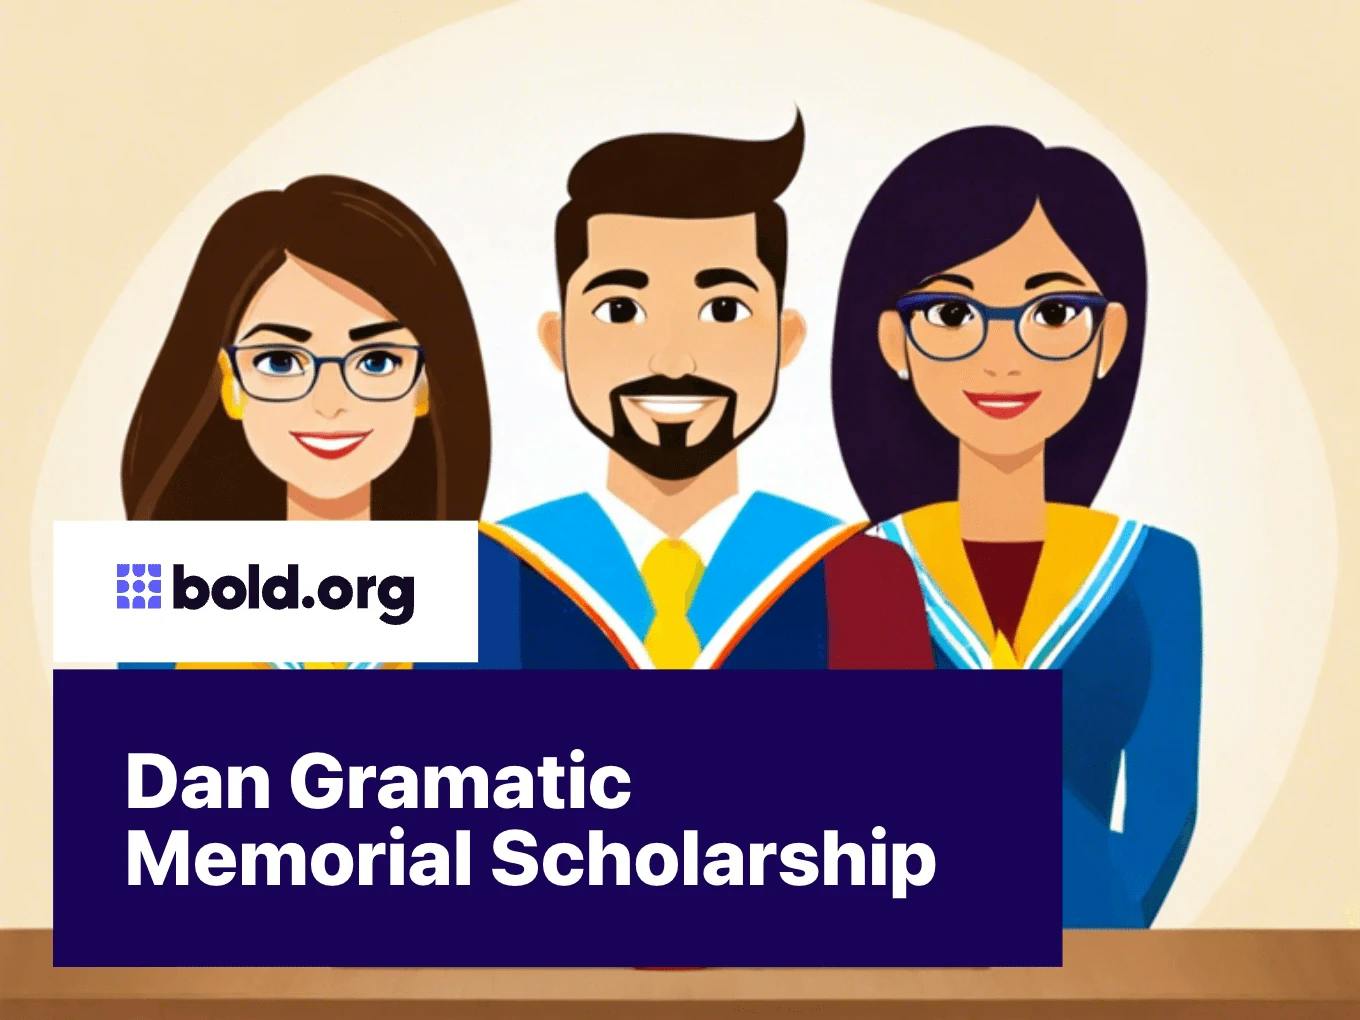 Dan Gramatic Memorial Scholarship